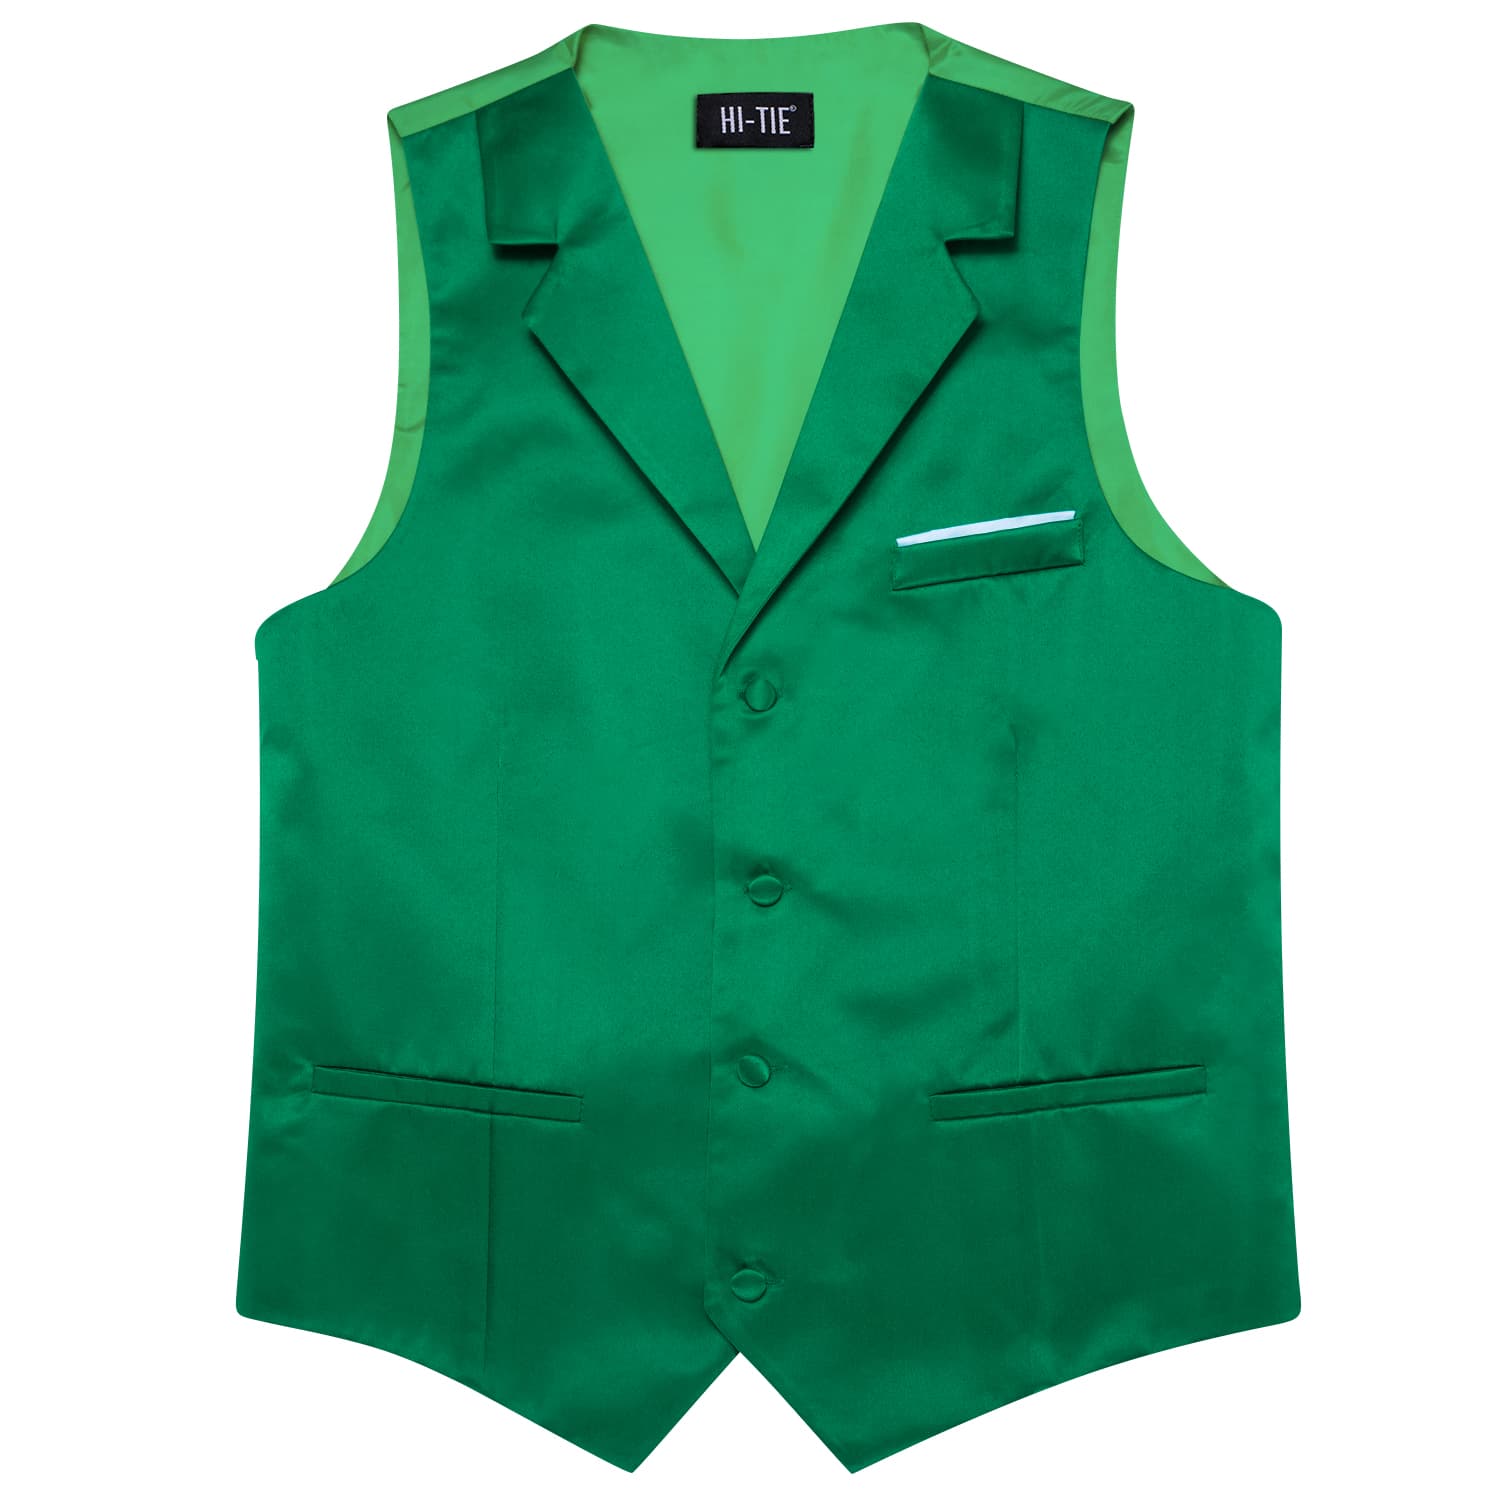 Hi-Tie Emerald Green Waistcoat Solid Notch lapels Men's Vest